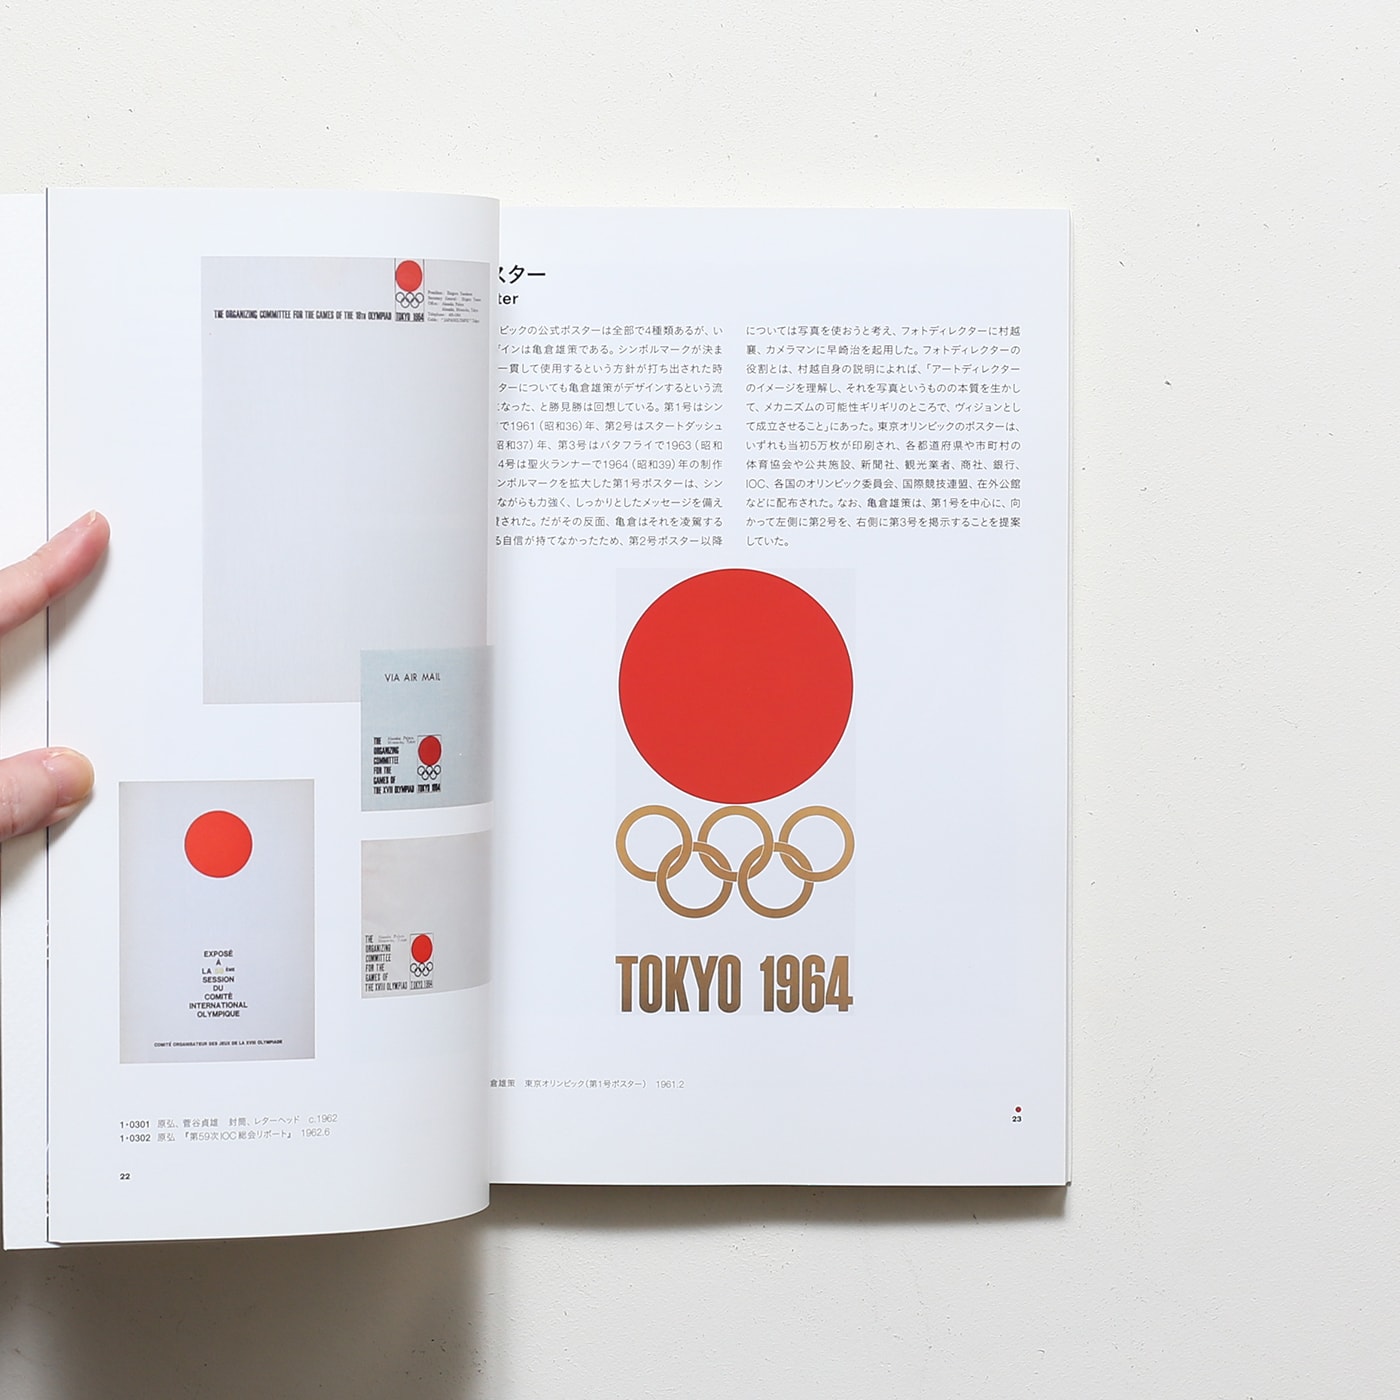 東京オリンピック 1964 デザインプロジェクト | 東京国立近代美術館 